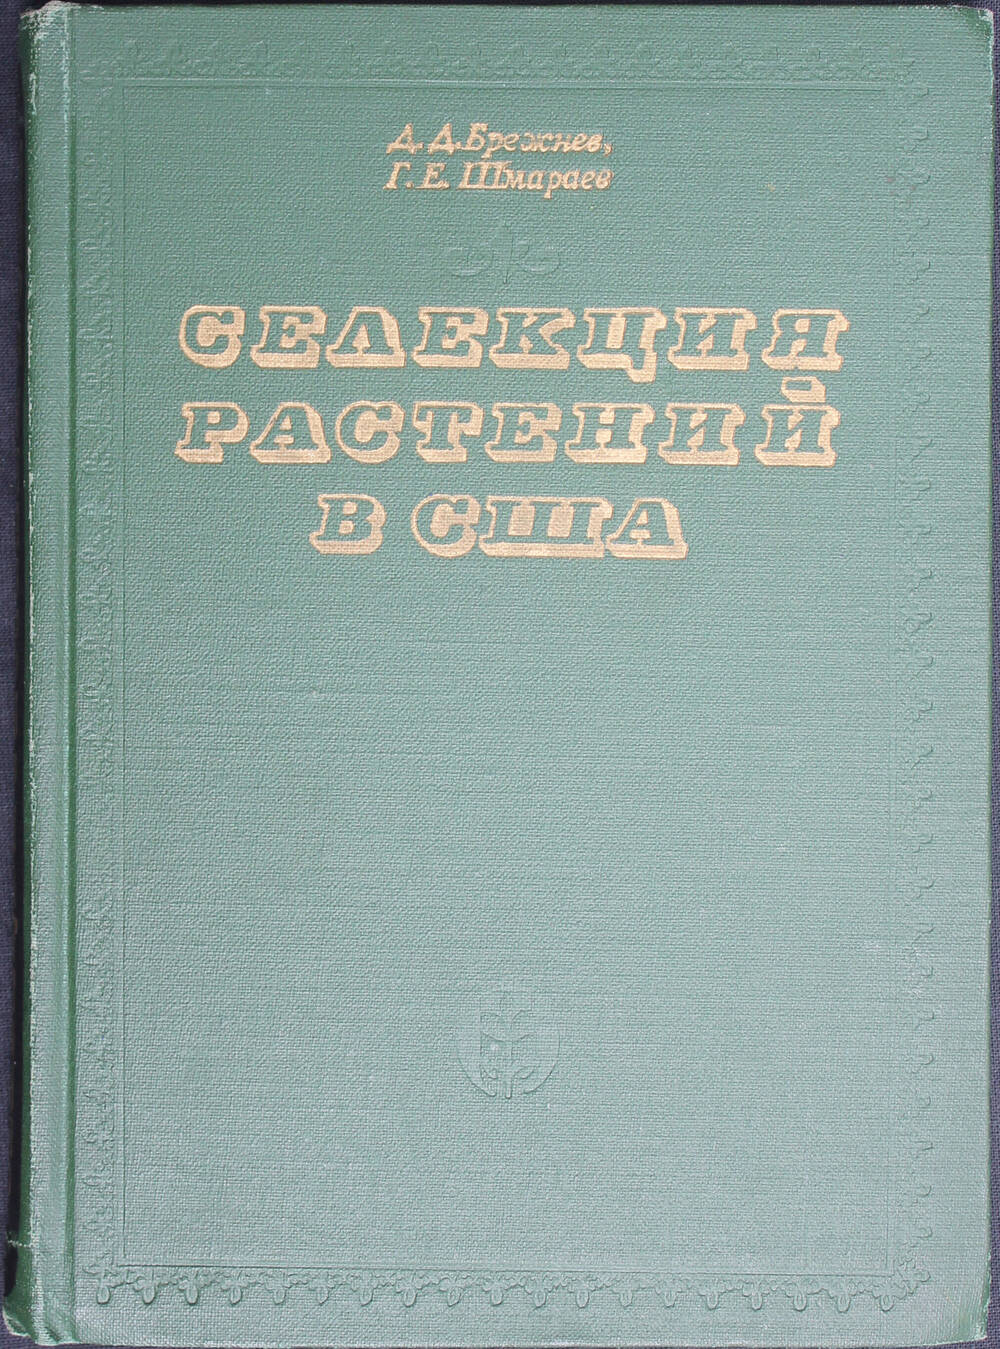 Книга. Брежнев Д.Д., Шмараев Г.Е. Селекция растений в США. М., Колос, 1972